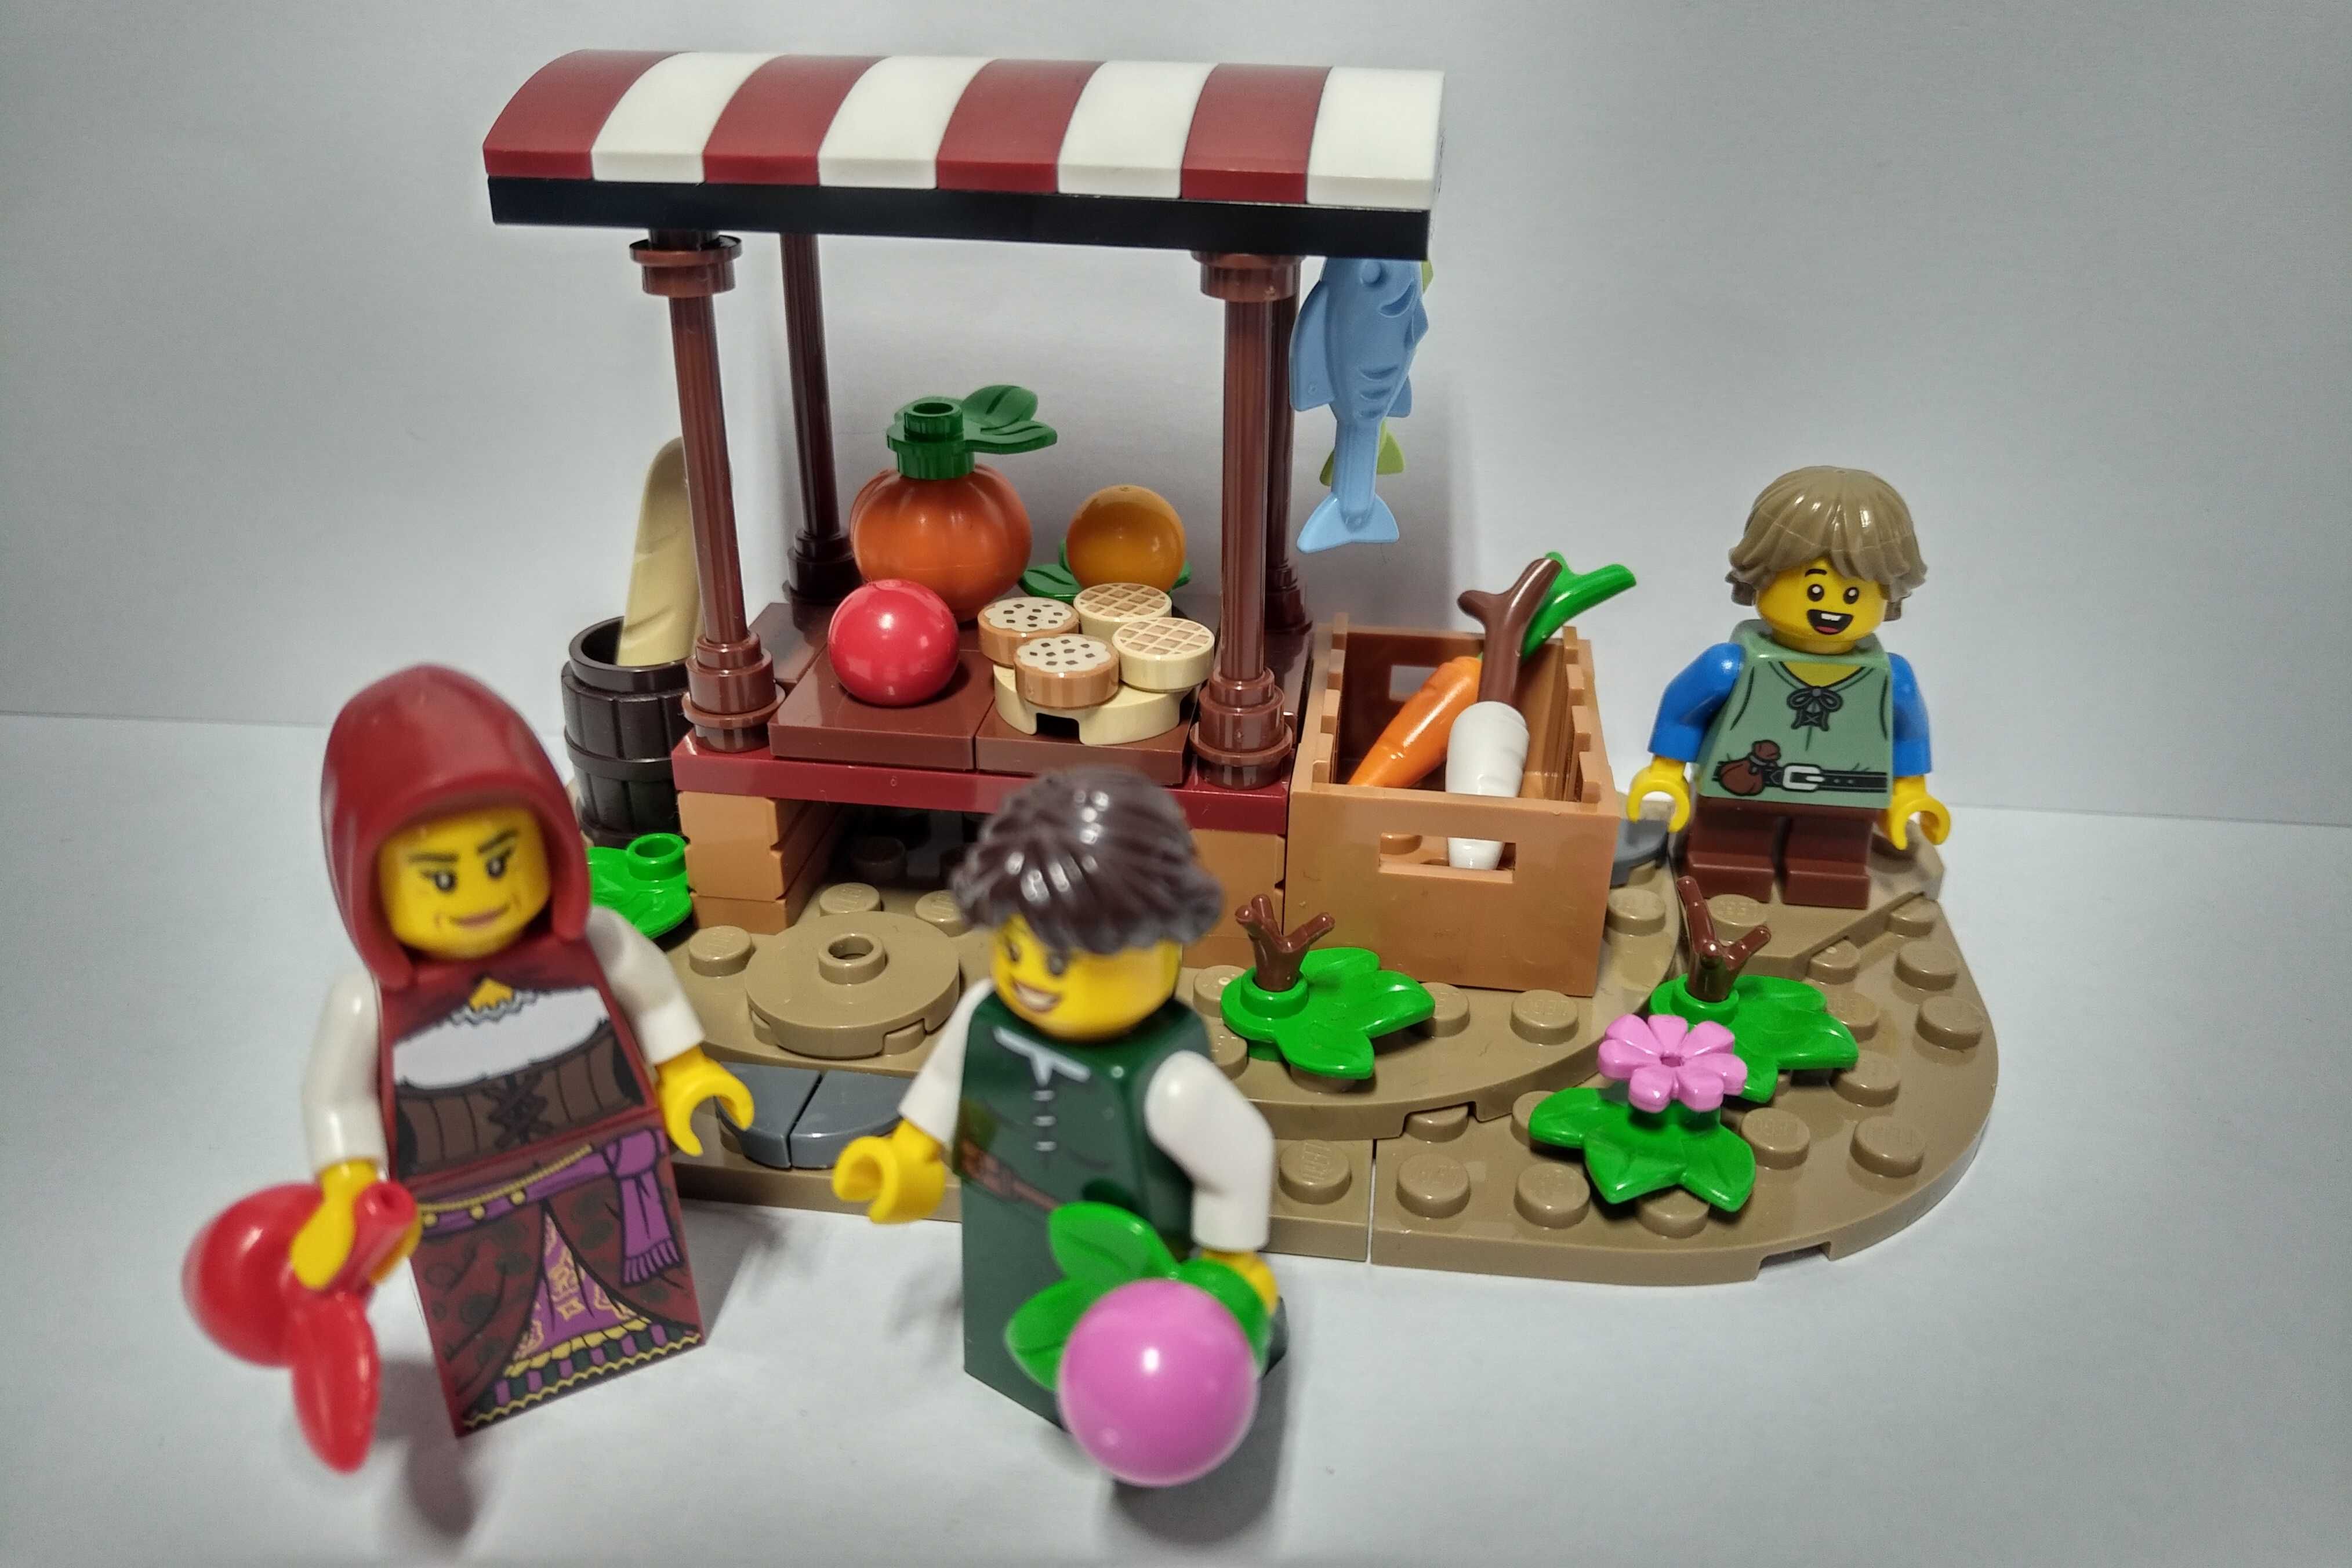 Lego Castle Zamek średniowieczny ryneczek / medieval market #4